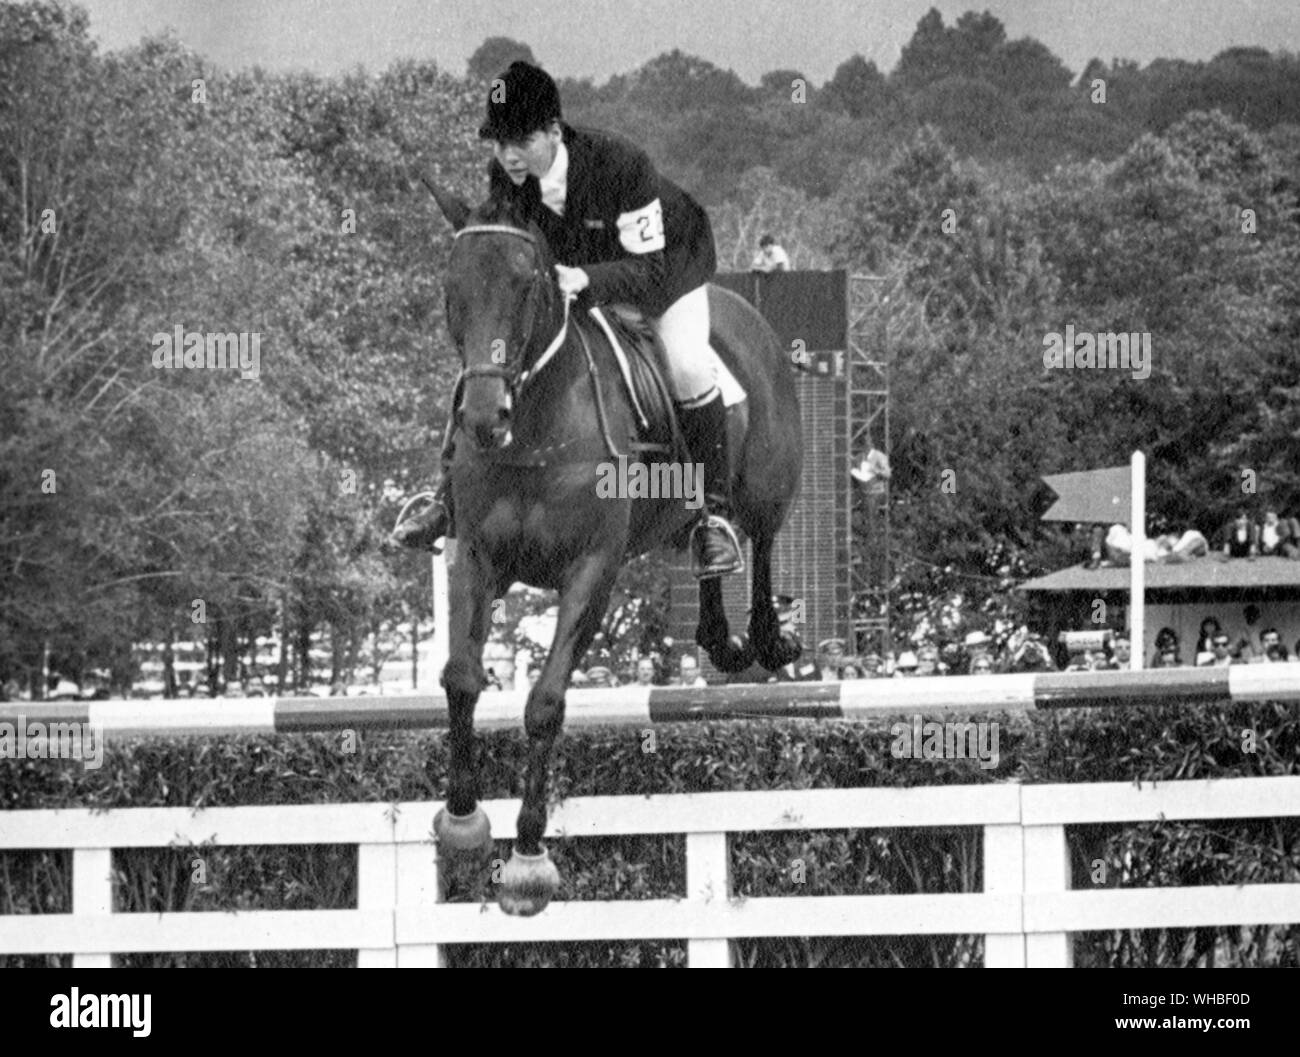 Jane Bullen Première femme membre de l'équipe olympique britannique Eqestrian prend de l'avance sur le cheval Nos Nobby comme l'équipe britannique de se déplacer vers la médaille d'imposer dans l'événement équestre de trois jours dans les Jeux Olympiques de 1968 à Mexico Banque D'Images